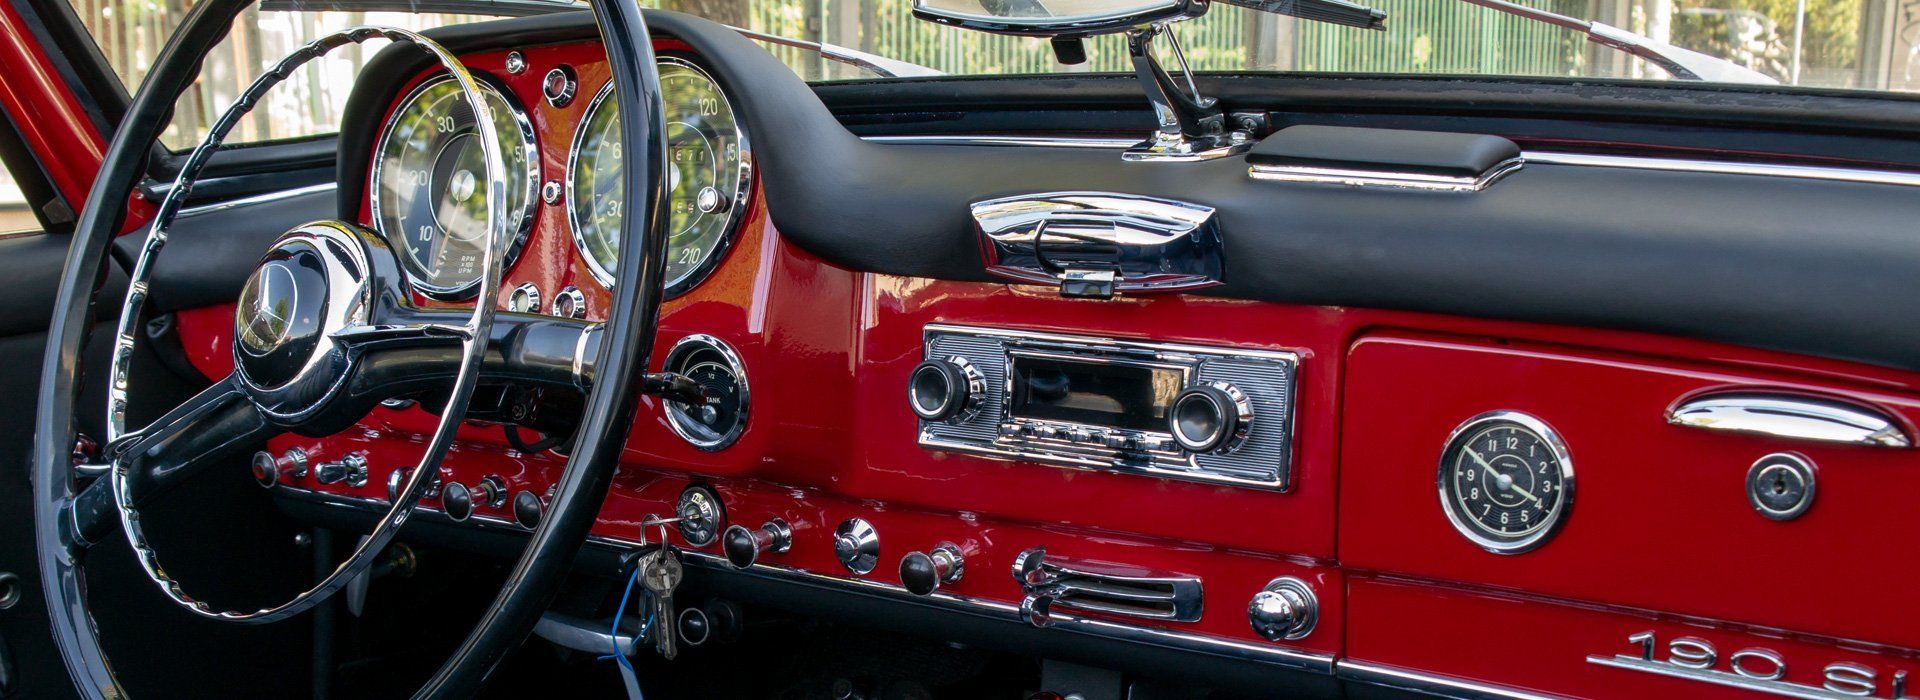 Innenraum eines Mercedes Benz 190SL in rot in tollem Zustand